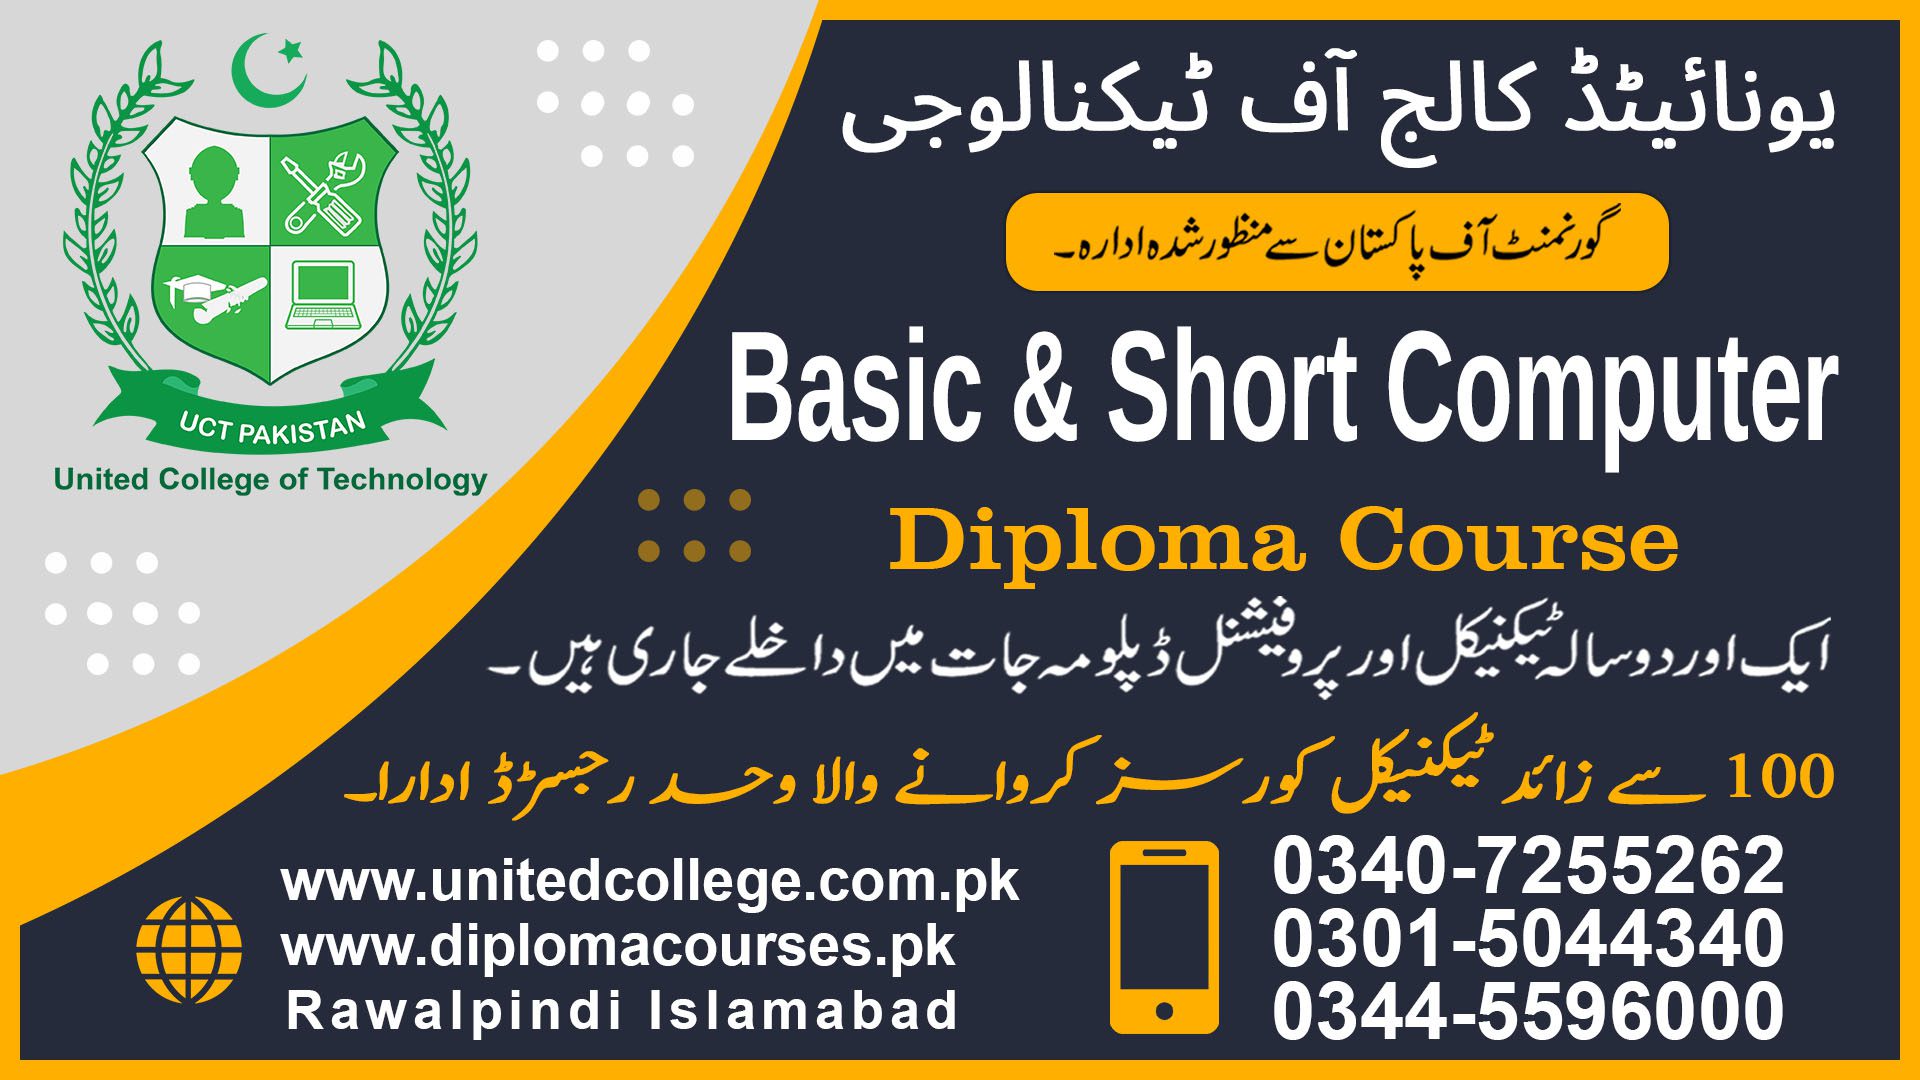 BASIC COMPUTER COURSE IN RAWALPINDI ISLAMABAD PAKISTAN